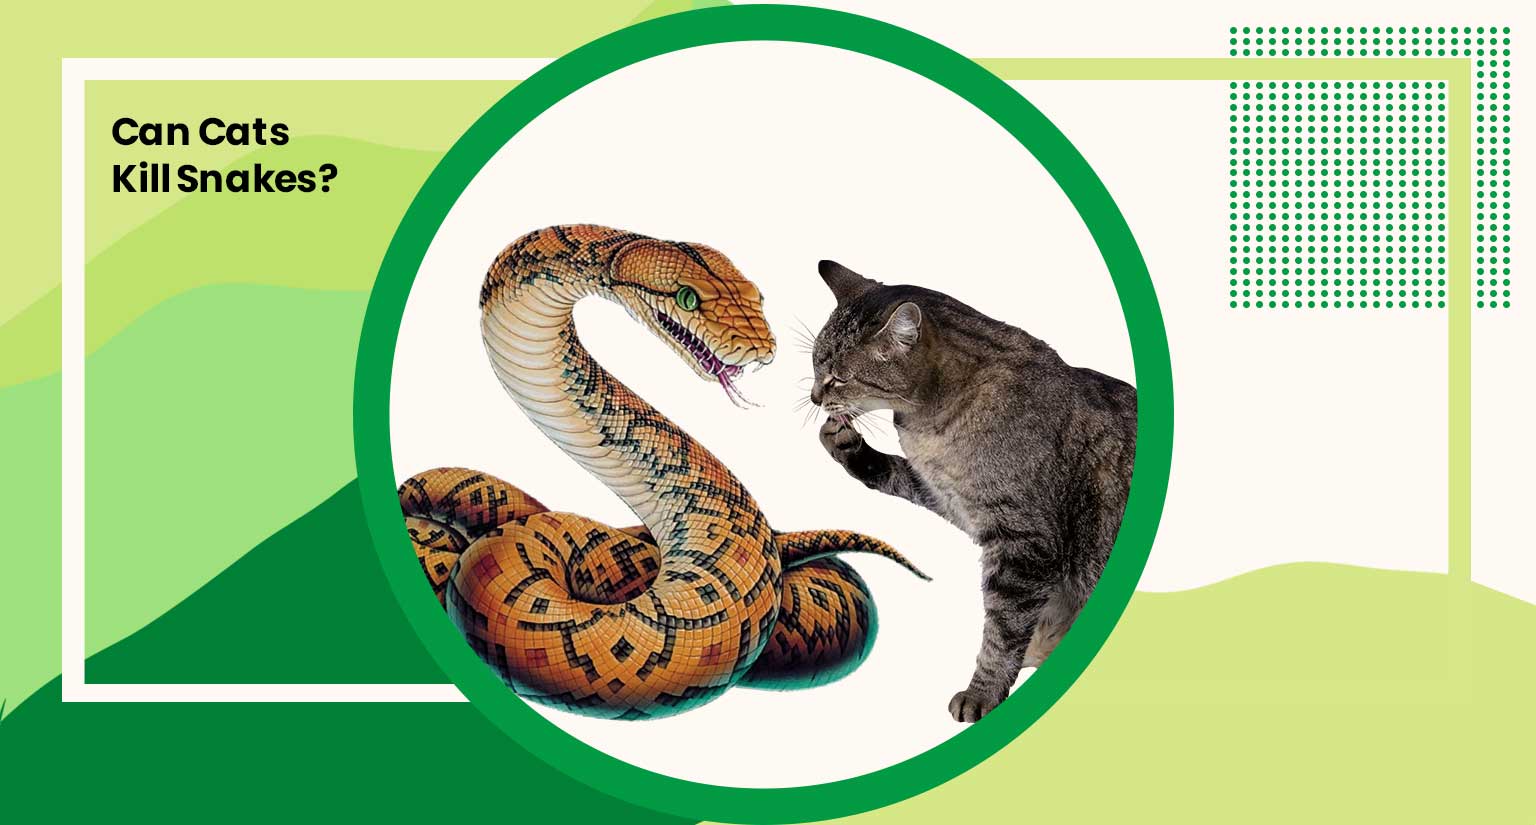 Can Cats Kill Snakes